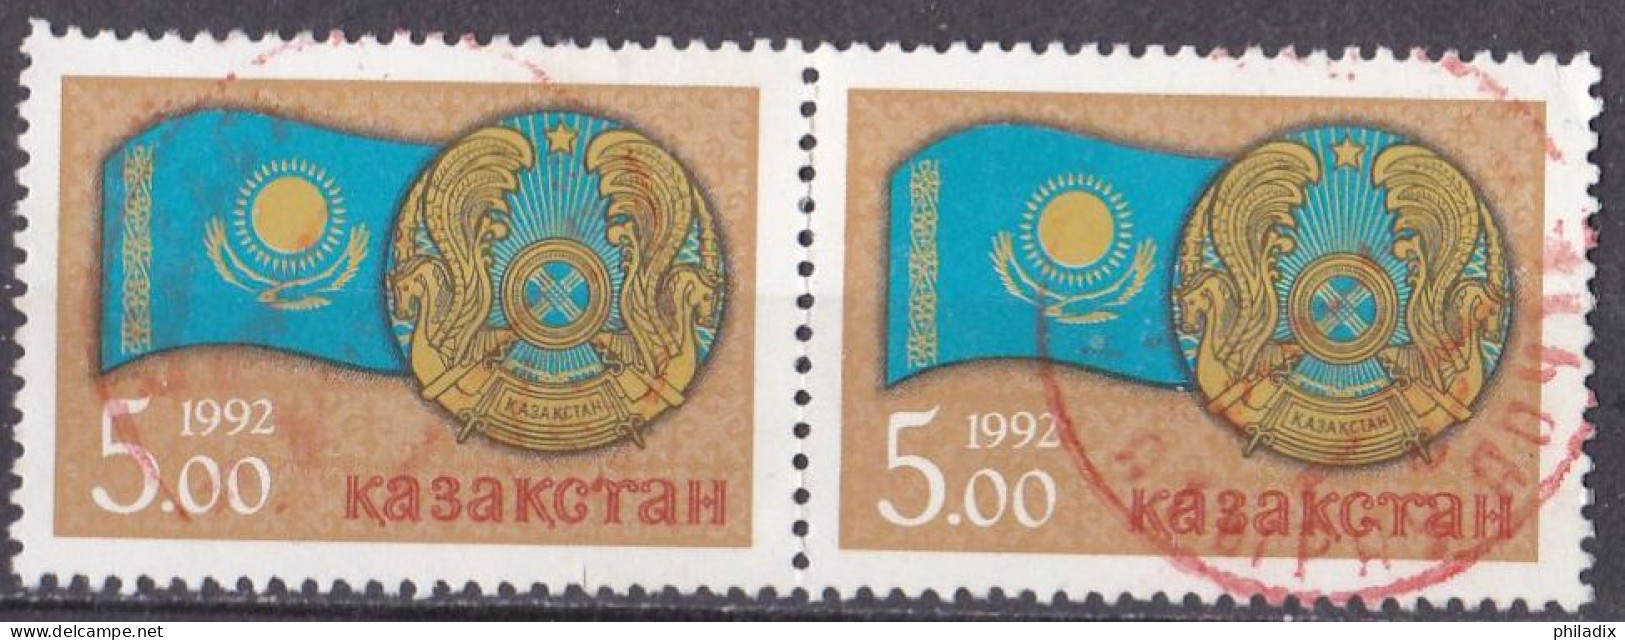 Kasachstan Marke Von 1992 O/used (A5-13) - Kasachstan